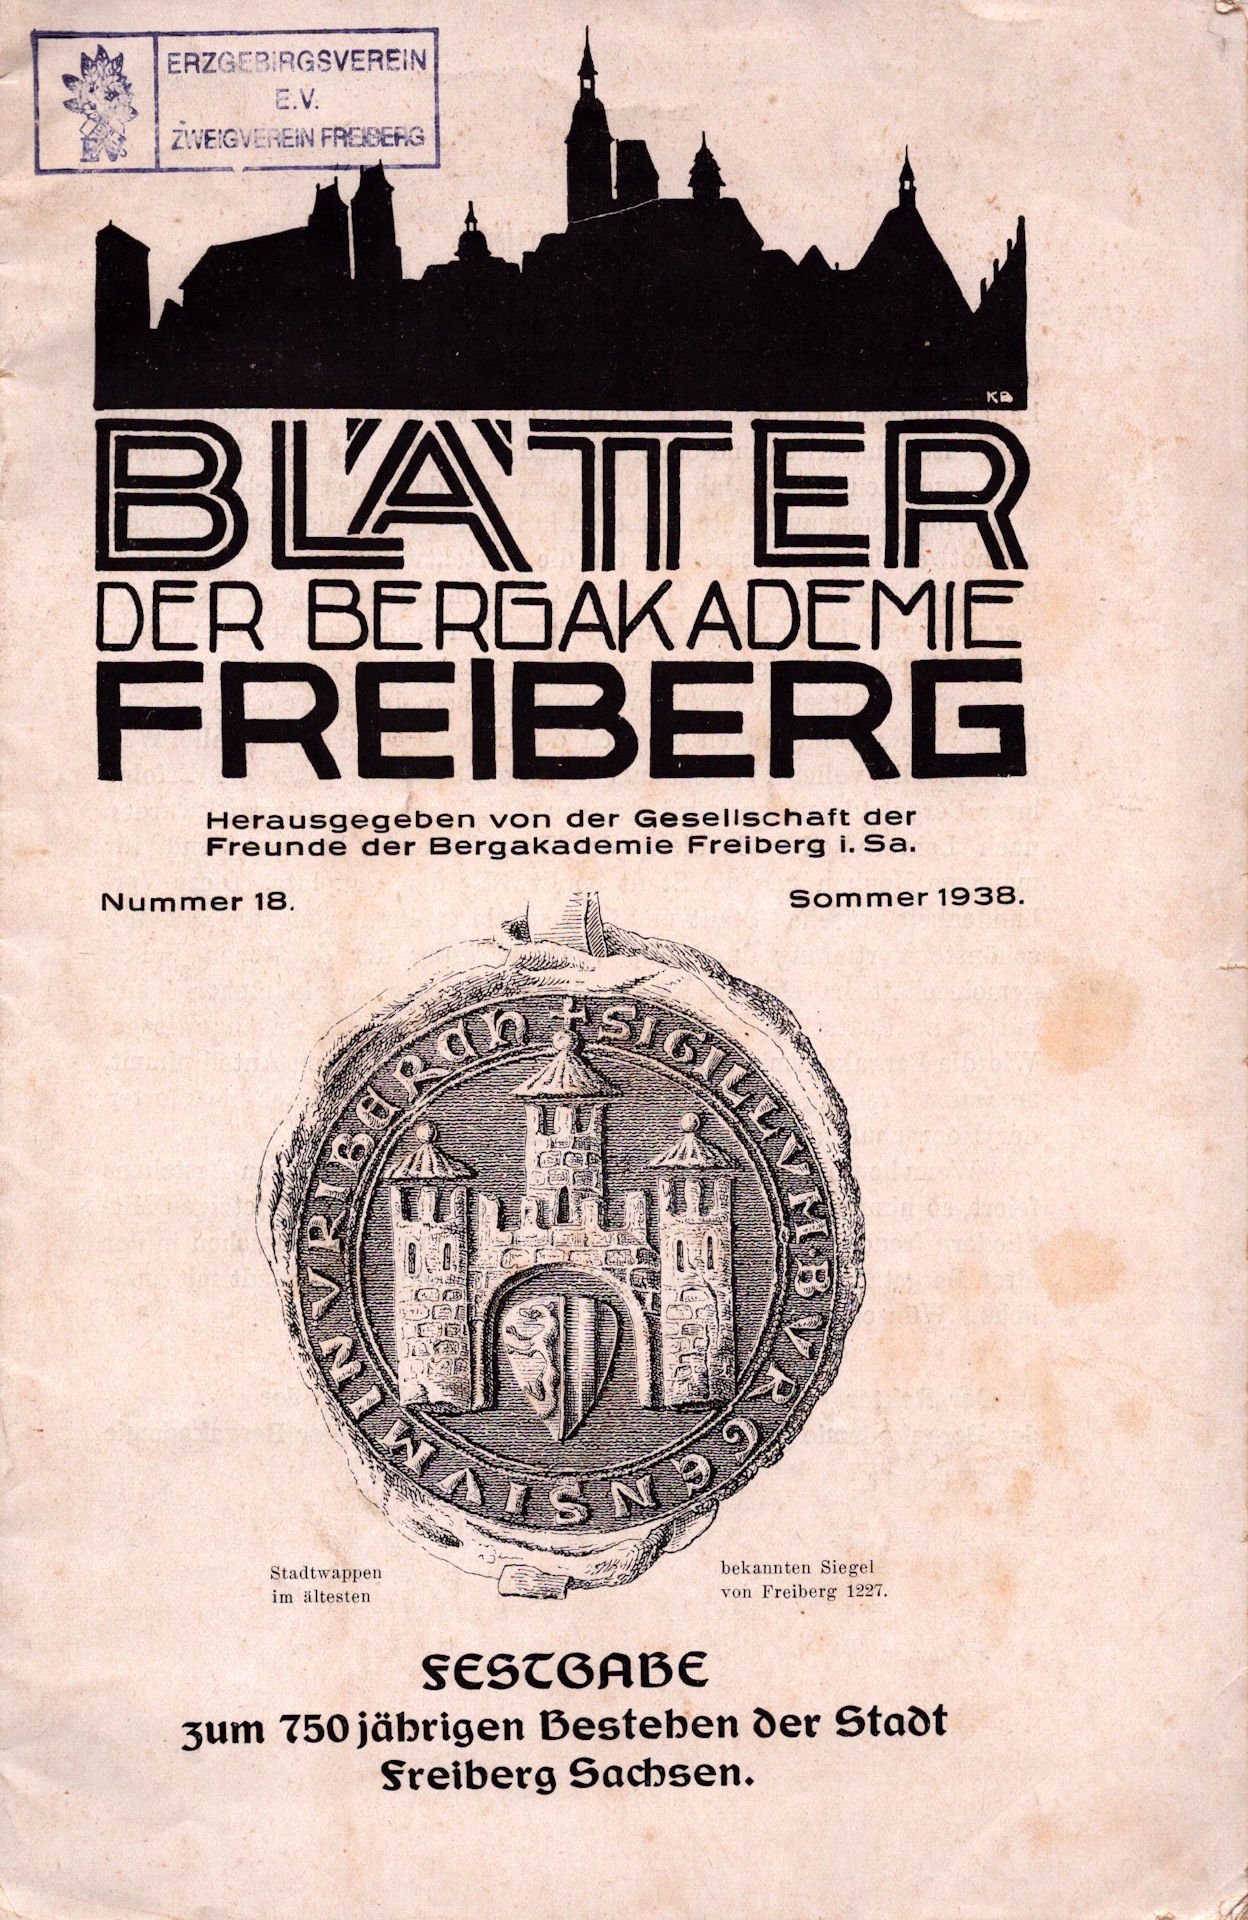 Blätter der Bergakademie Freiberg - Festgabe zum 750 jährigen Bestehen der Stadt Freiberg Sachsen (Archiv SAXONIA-FREIBERG-STIFTUNG CC BY-NC-SA)